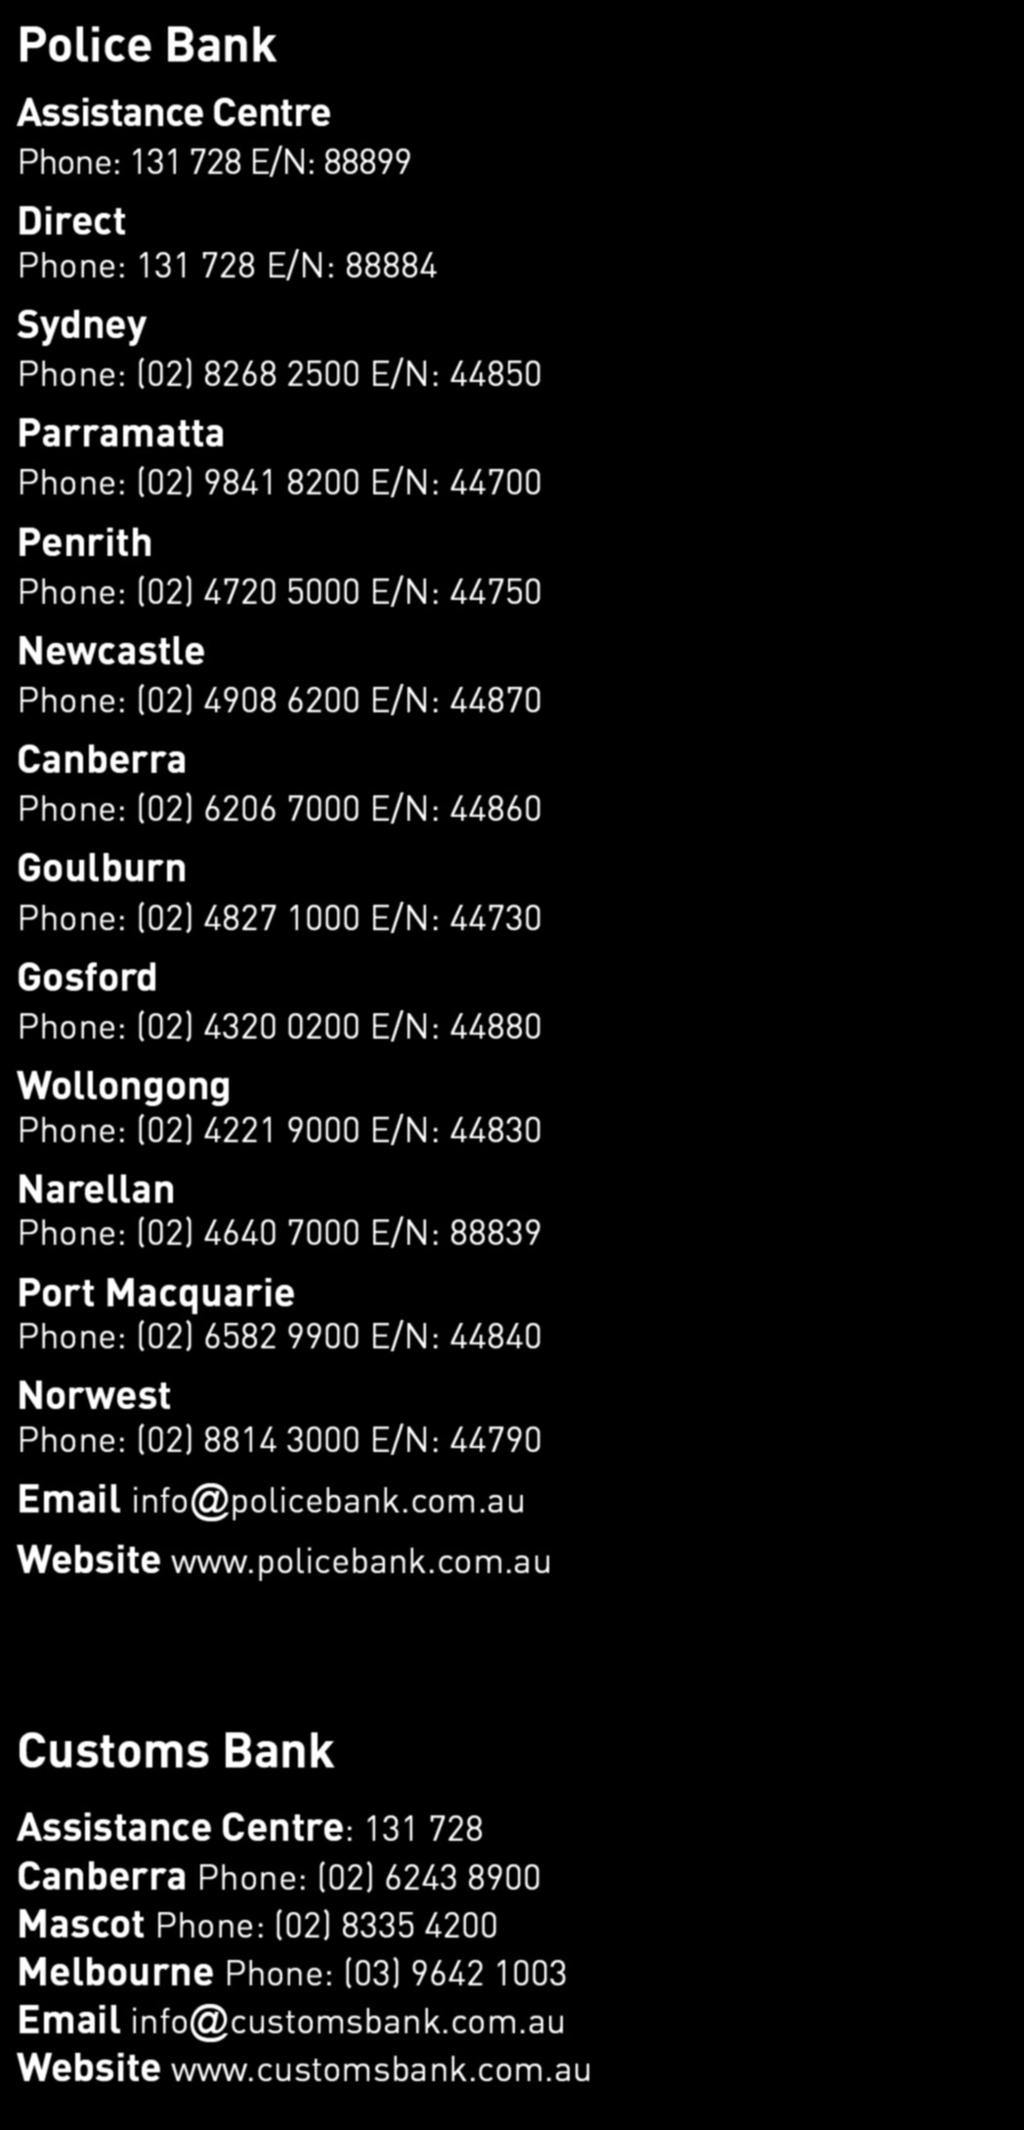 Wollongong Phone: (02) 4221 9000 E/N: 44830 Narellan Phone: (02) 4640 7000 E/N: 88839 Port Macquarie Phone: (02) 6582 9900 E/N: 44840 Norwest Phone: (02) 8814 3000 E/N: 44790 Email info@policebank.